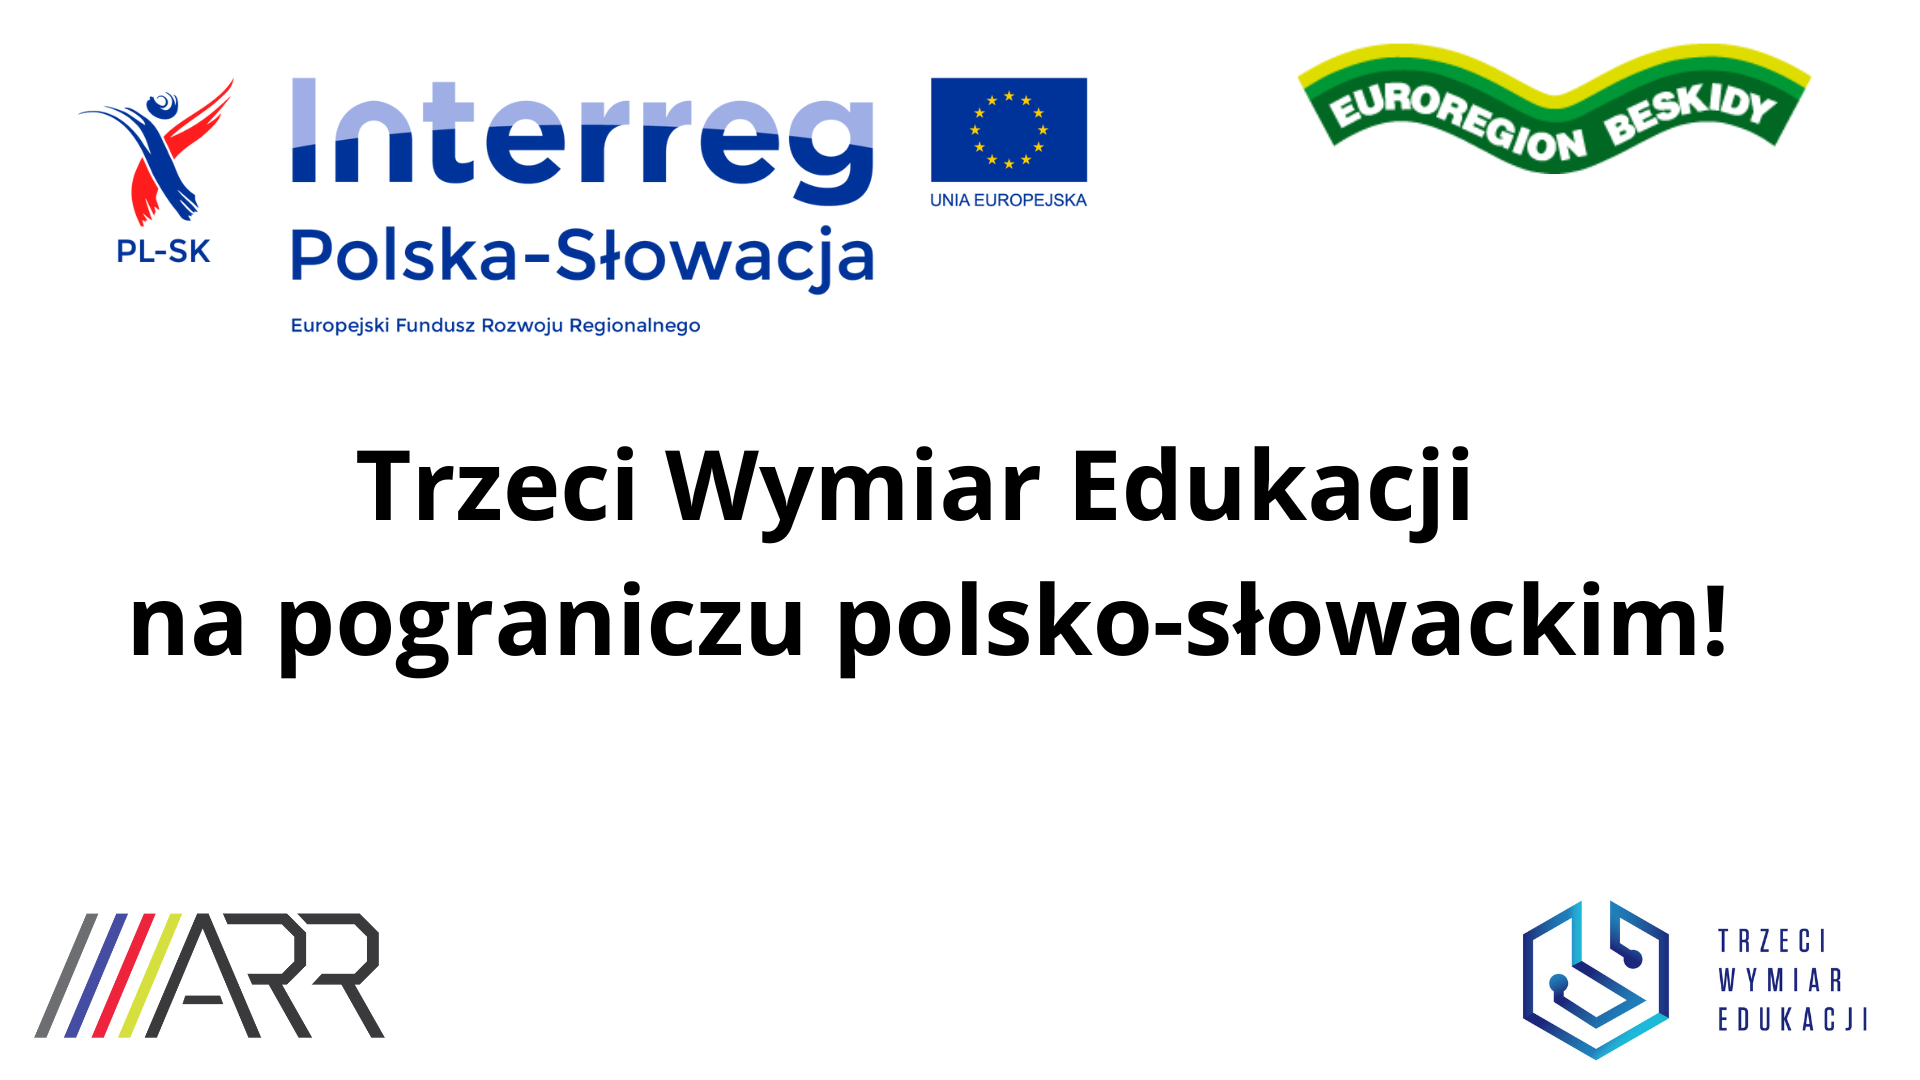 Trzeci Wymiar Edukacji na pograniczu polsko-słowackim